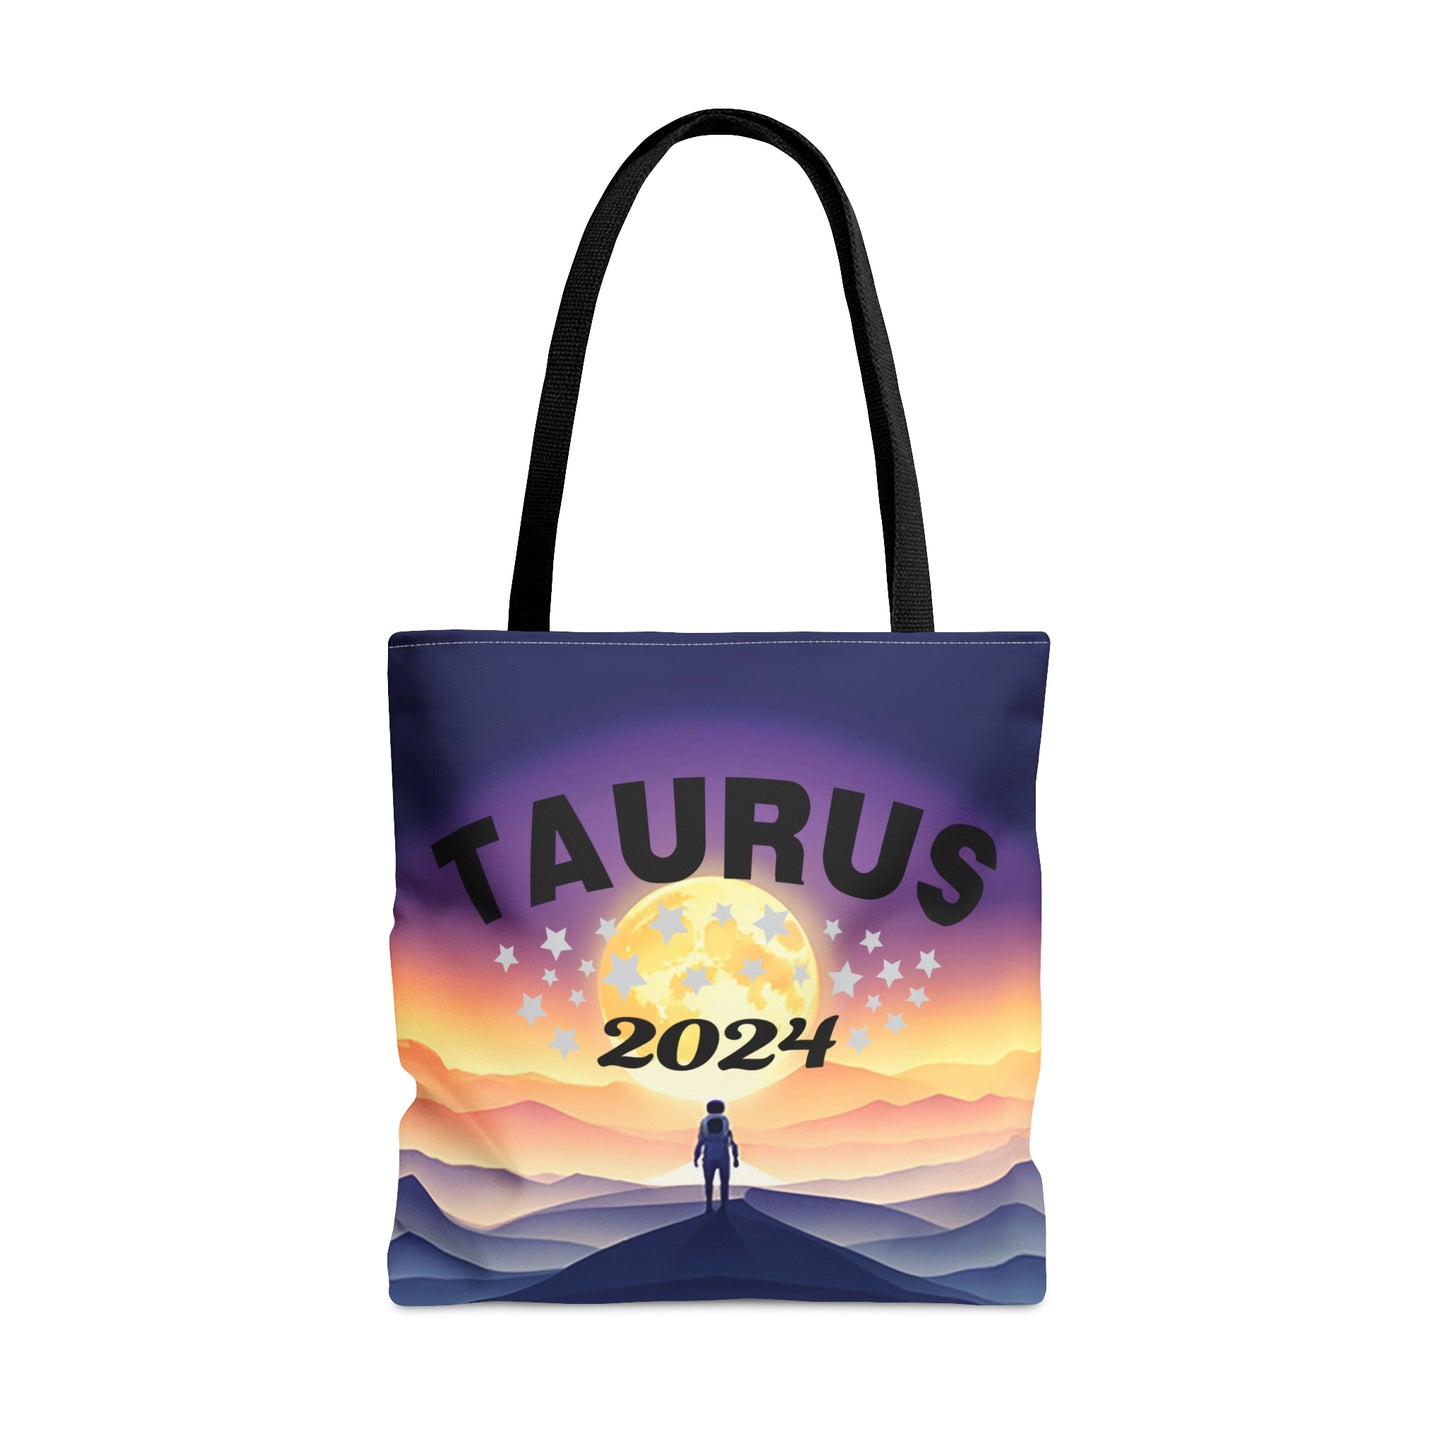 Taurus 2024 Tote Bag